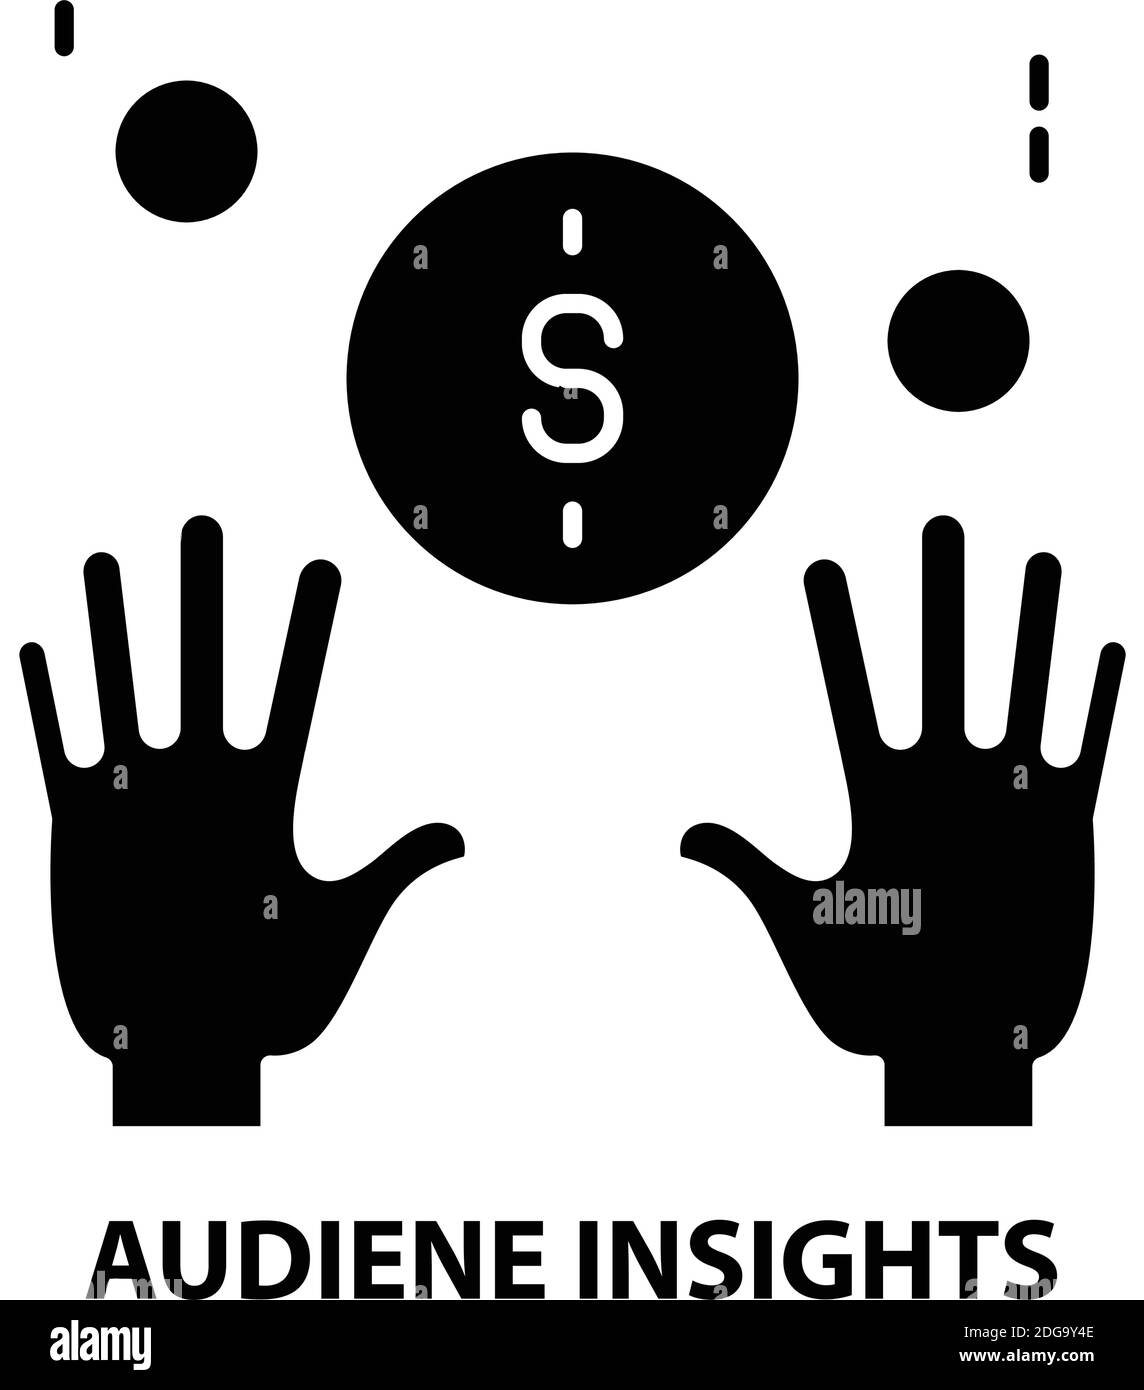 Audiene Insights-Symbol, schwarzes Vektorzeichen mit editierbaren Konturen, Konzeptdarstellung Stock Vektor